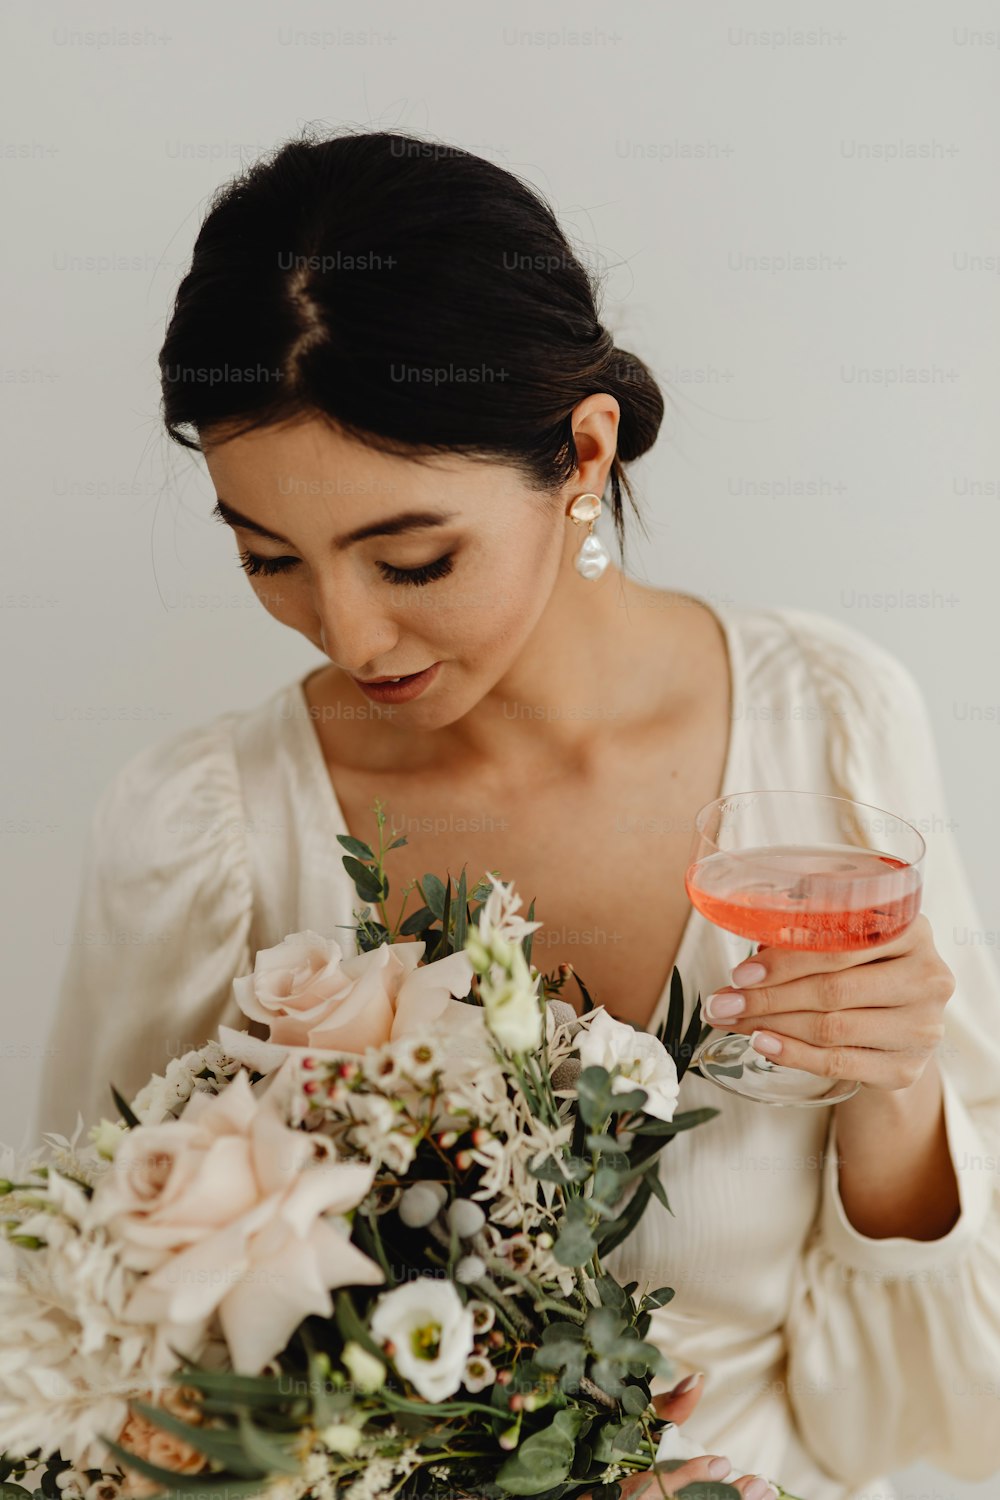 Eine Frau in einem weißen Kleid hält ein Glas Wein in der Hand